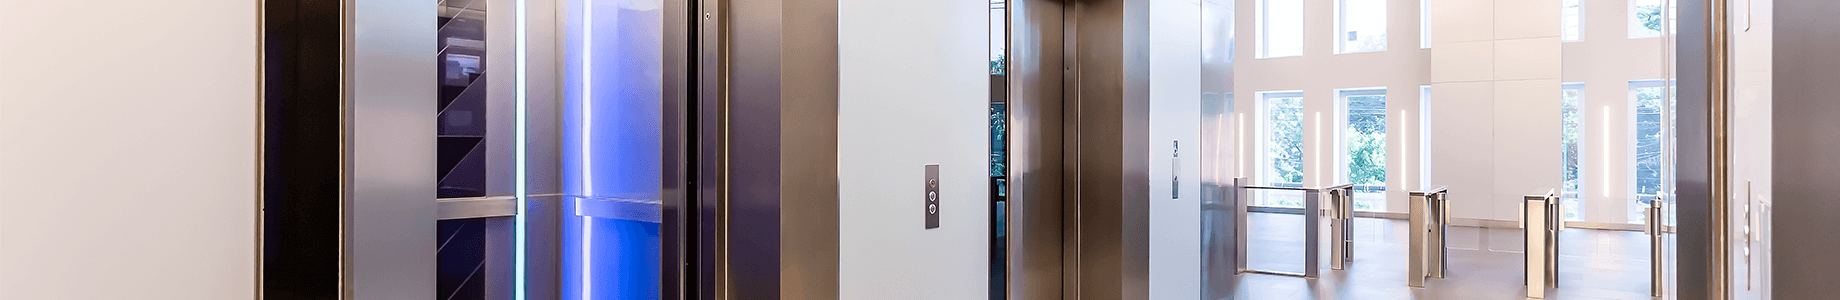 Modernização estética de elevadores atualiza equipamento e valoriza edifícios